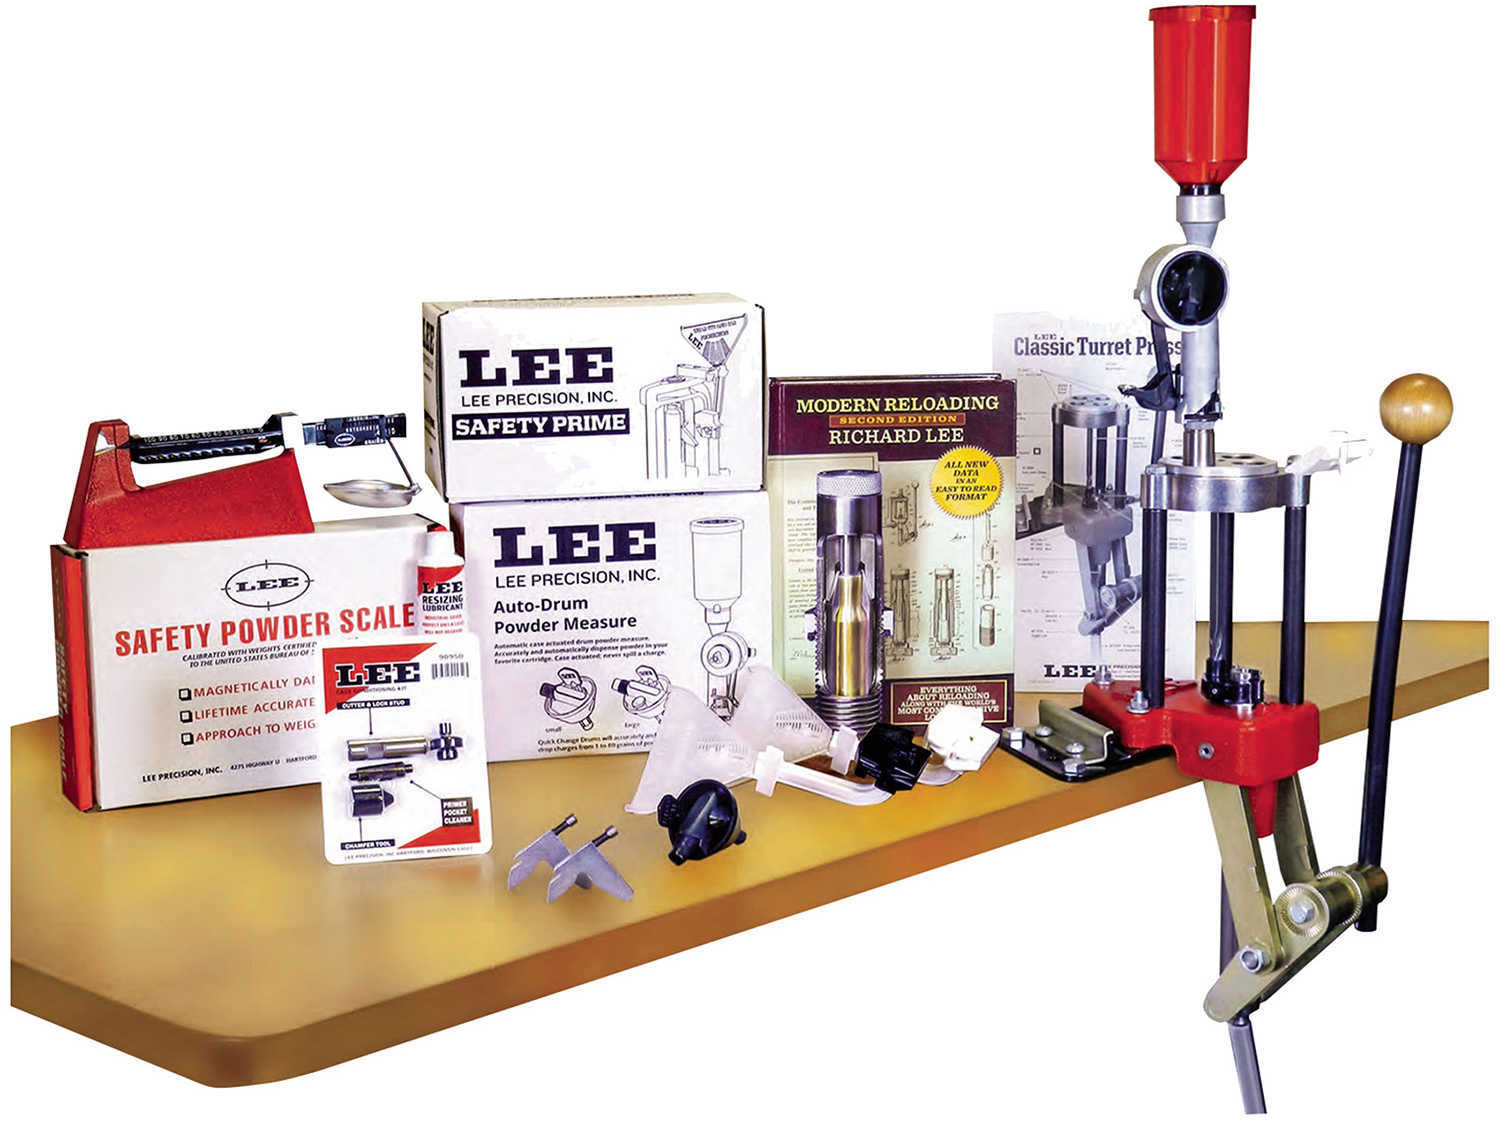 Lee Classic TURRETT Press Kit